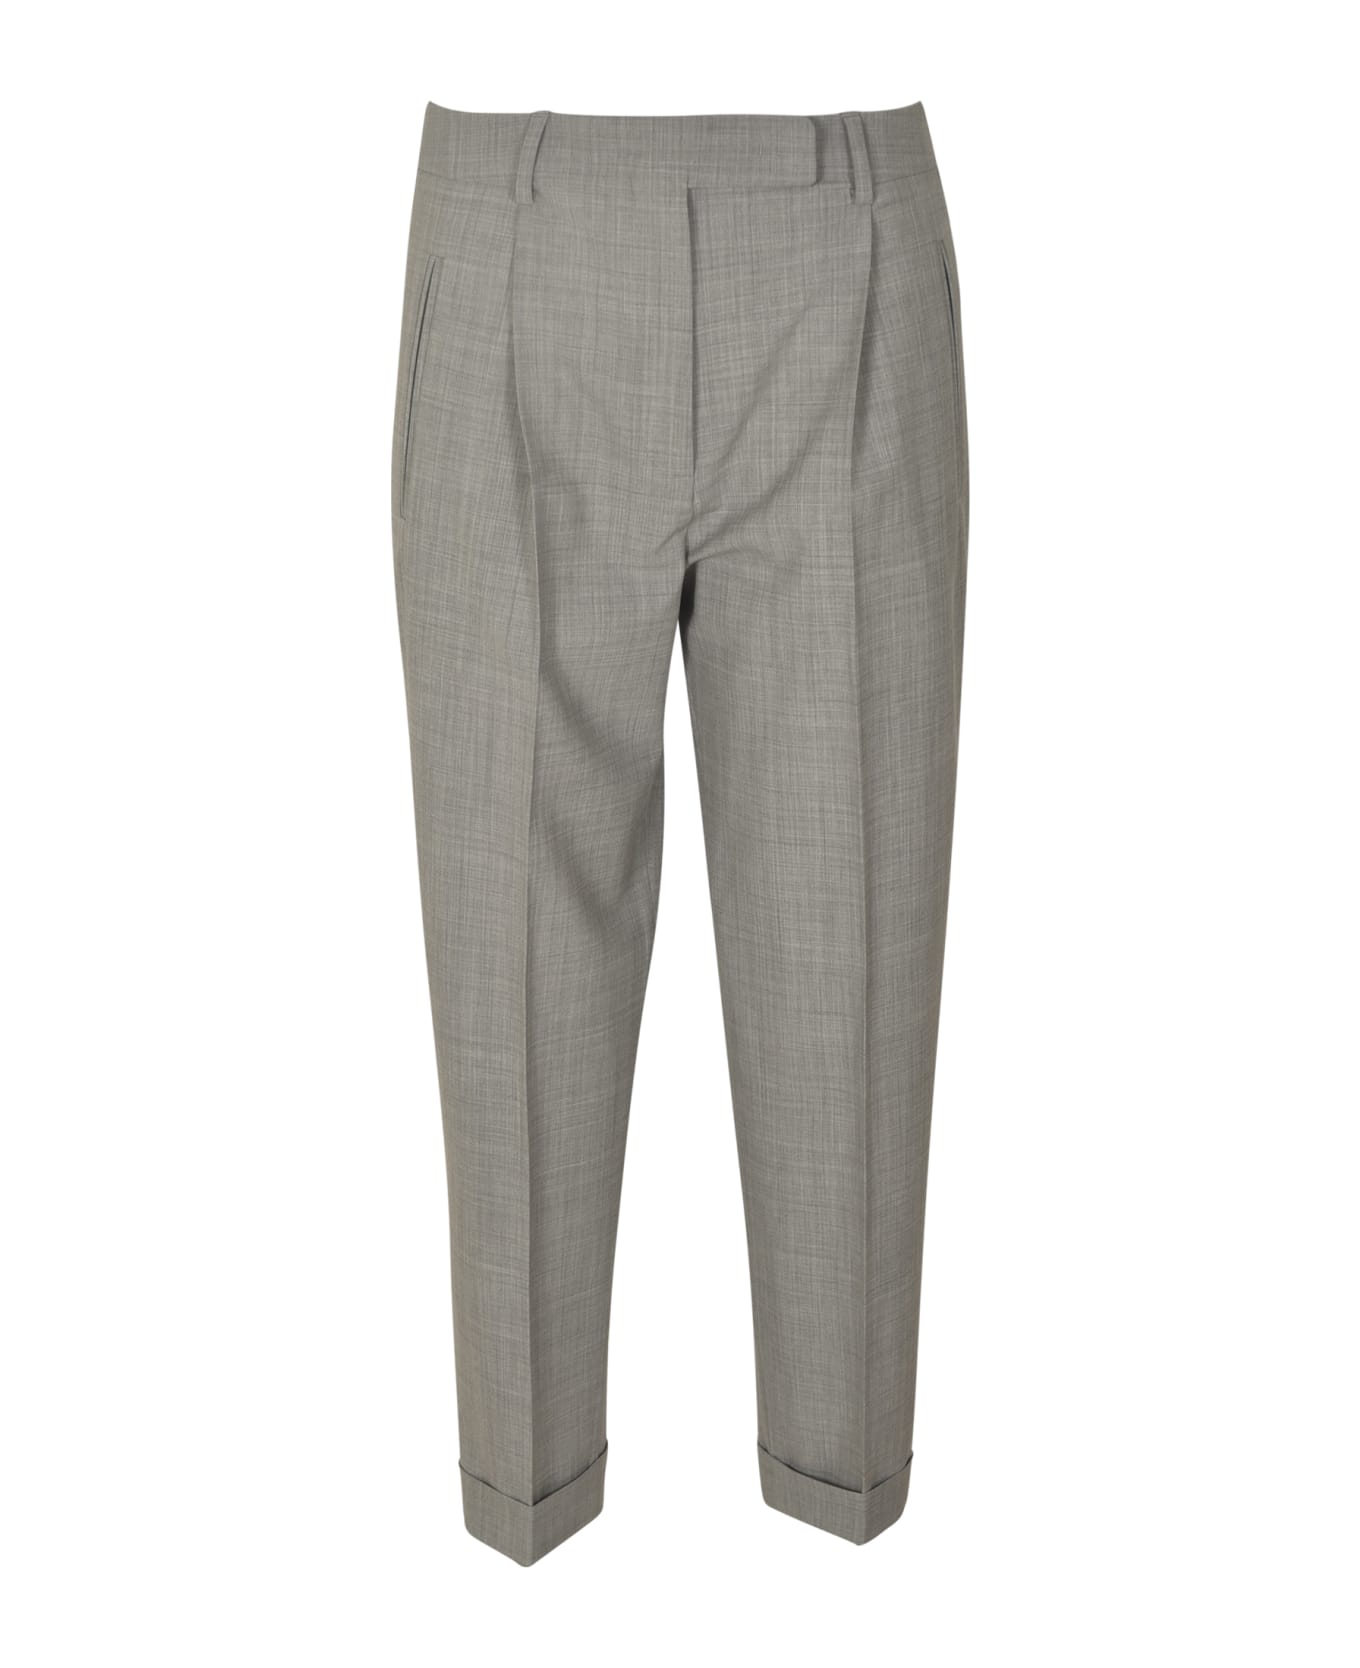 QL2 Classic Plain Trousers - Gray ボトムス